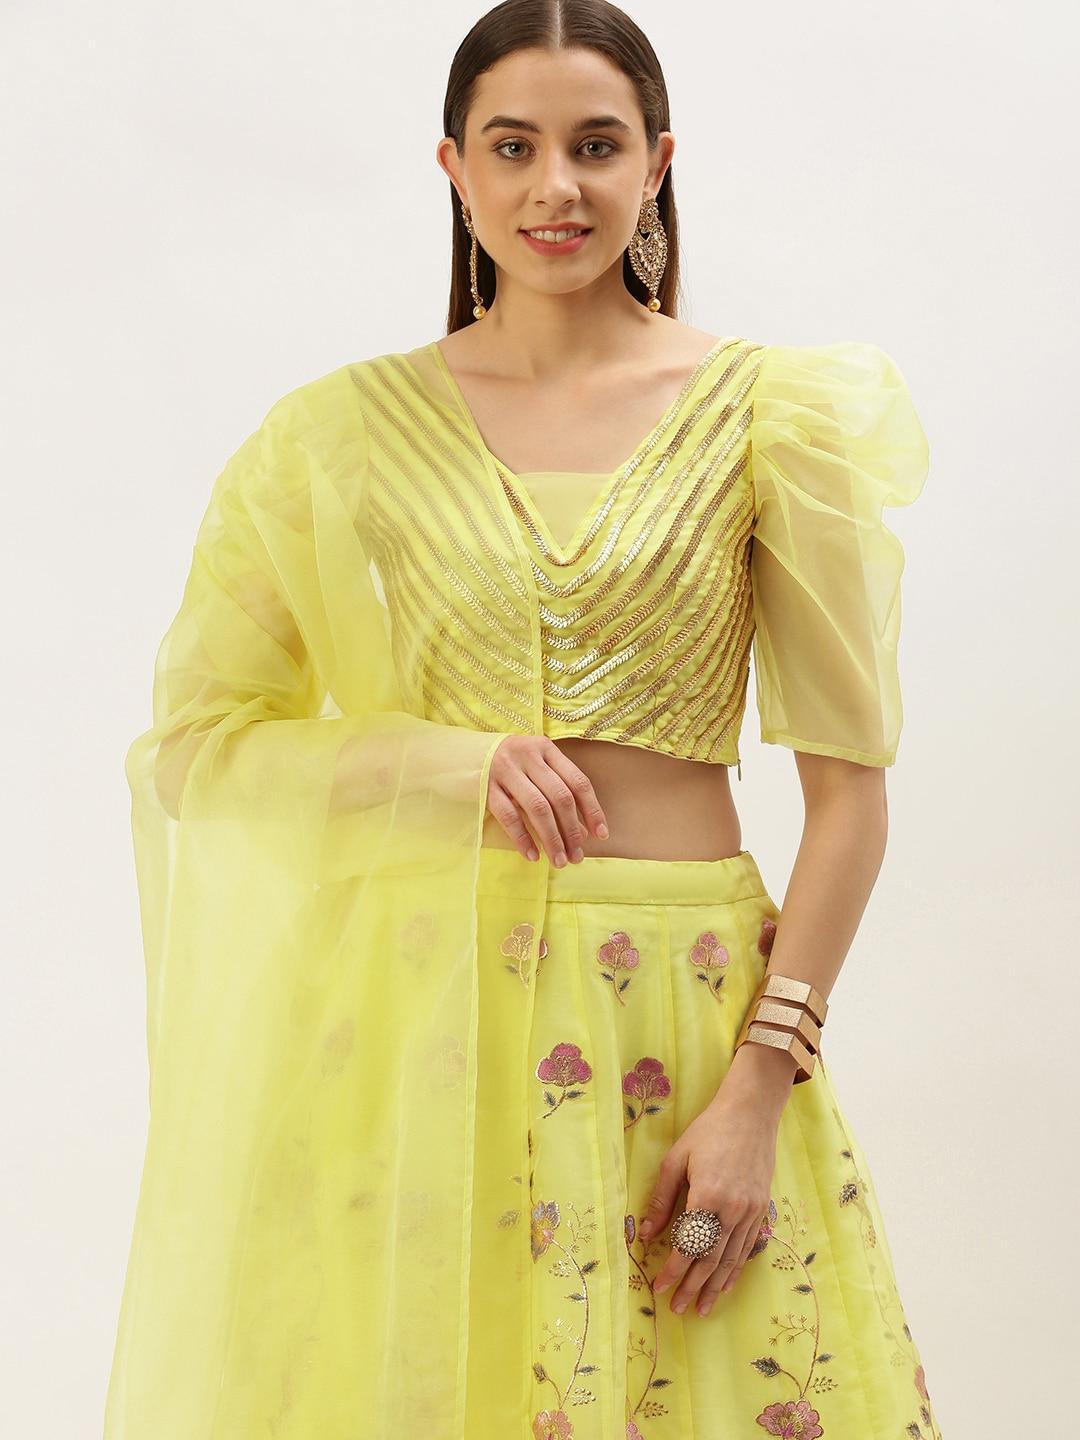 ethnovog embellished thread work ready to wear lehenga & blouse with dupatta